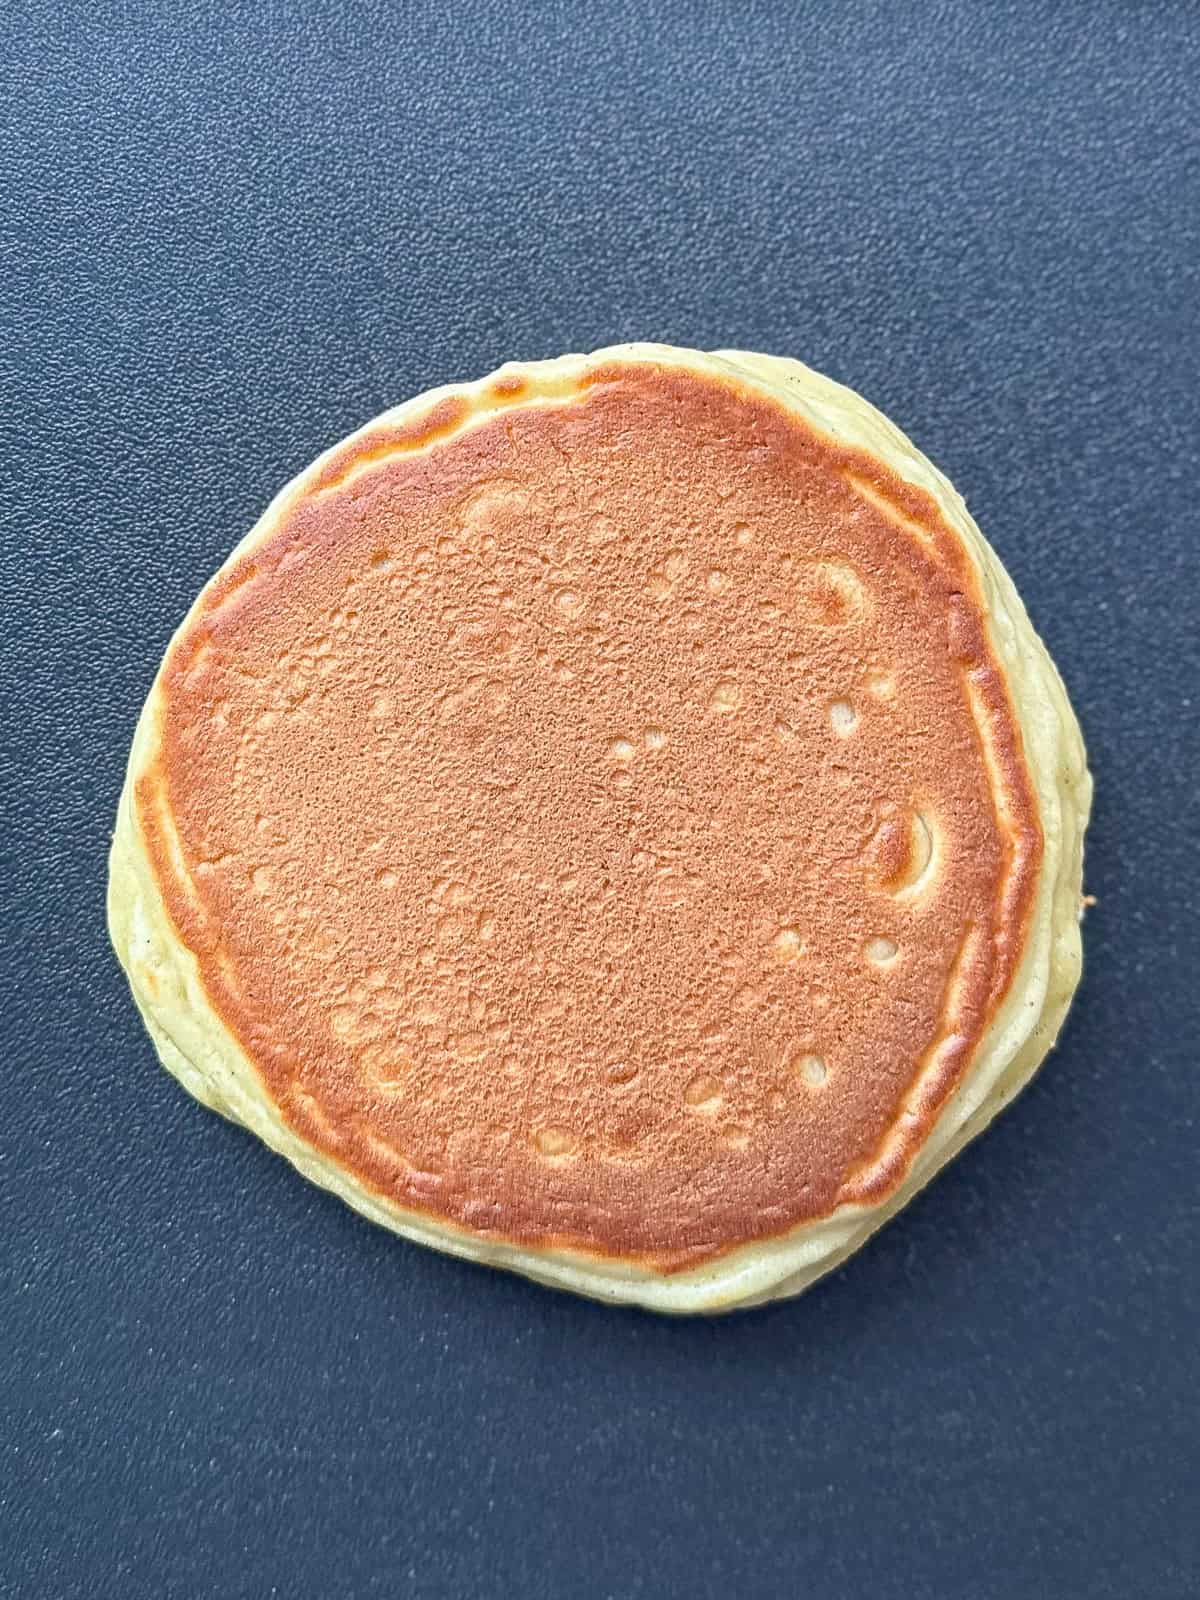 Flipped over pancake on nonstick pan.